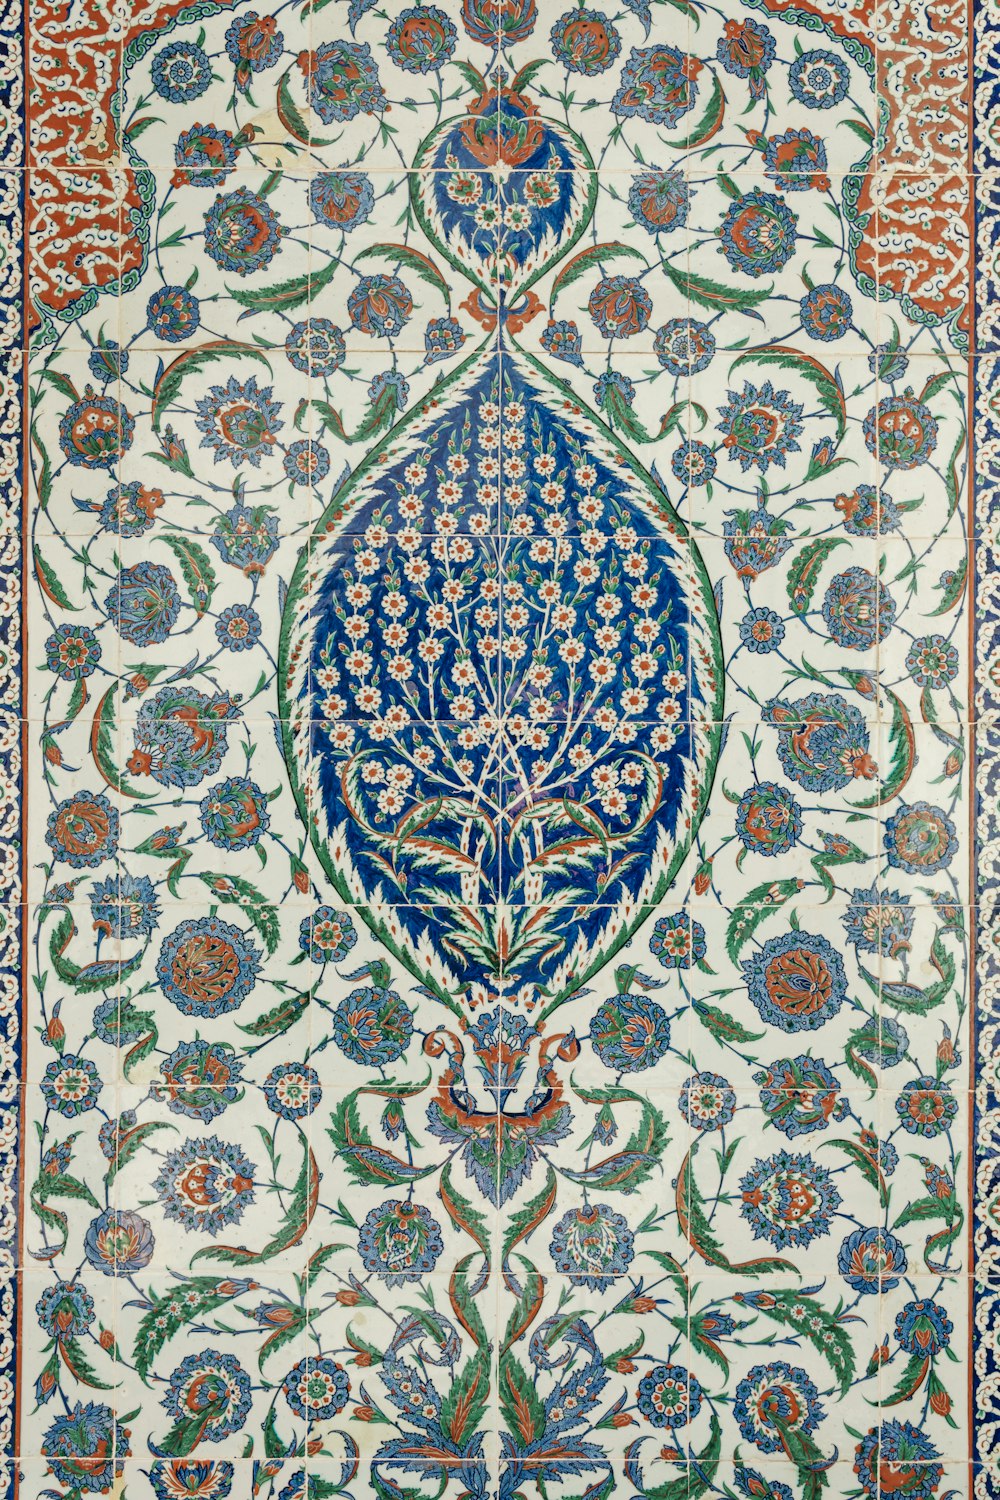 Ein aufwendig gestalteter Teppich mit blauen und grünen Blumen